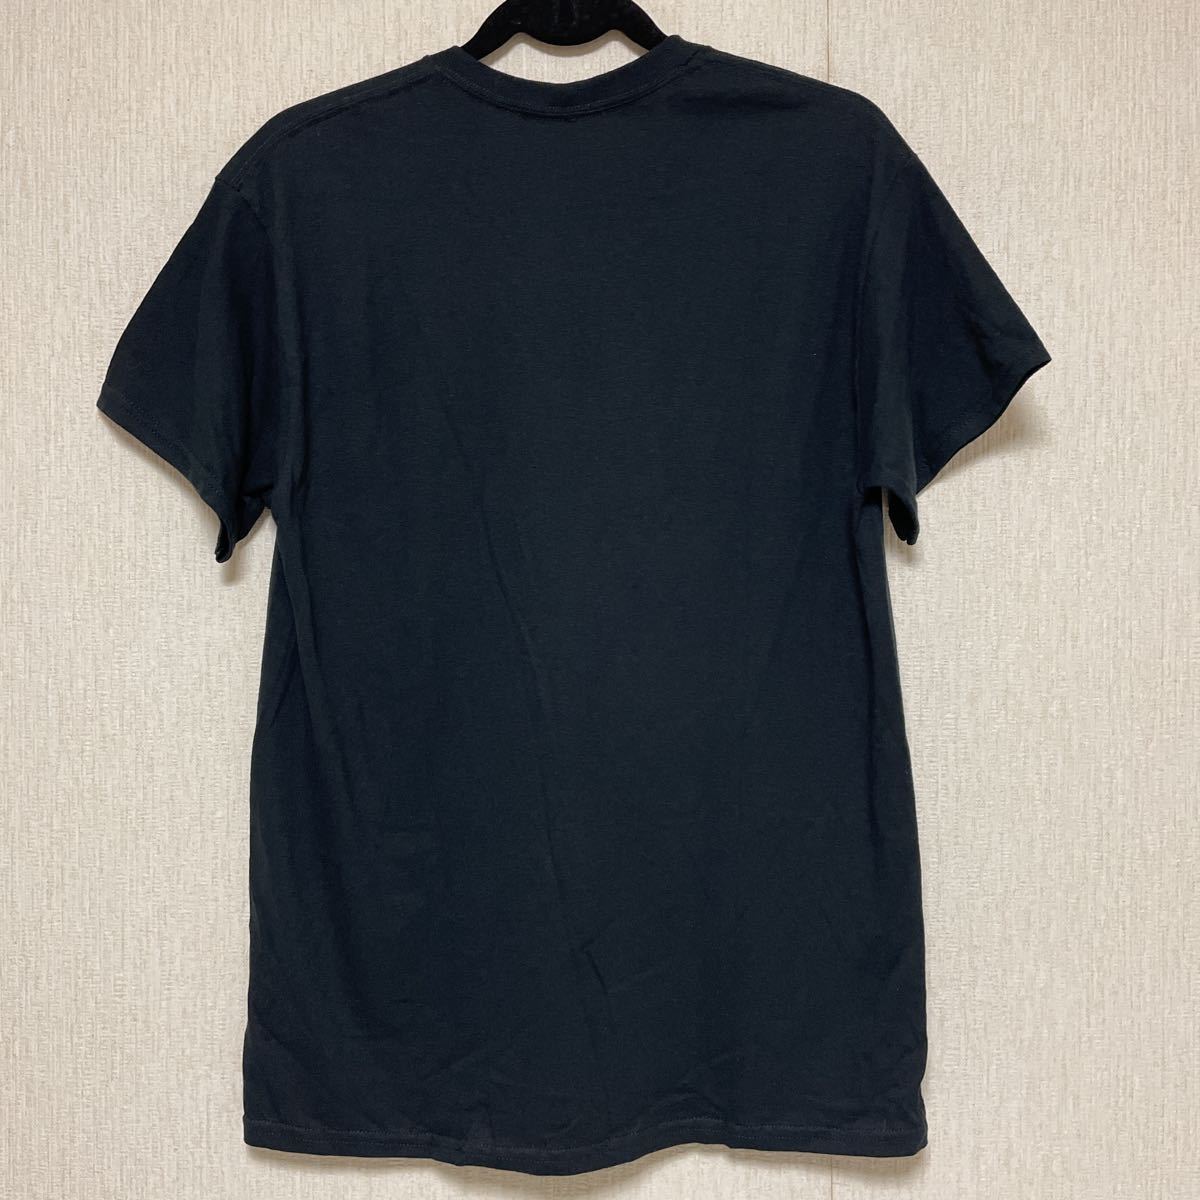 即決☆TLC Tシャツ rue21 ブラック M 希少 レア デザイン タグ付き 新品